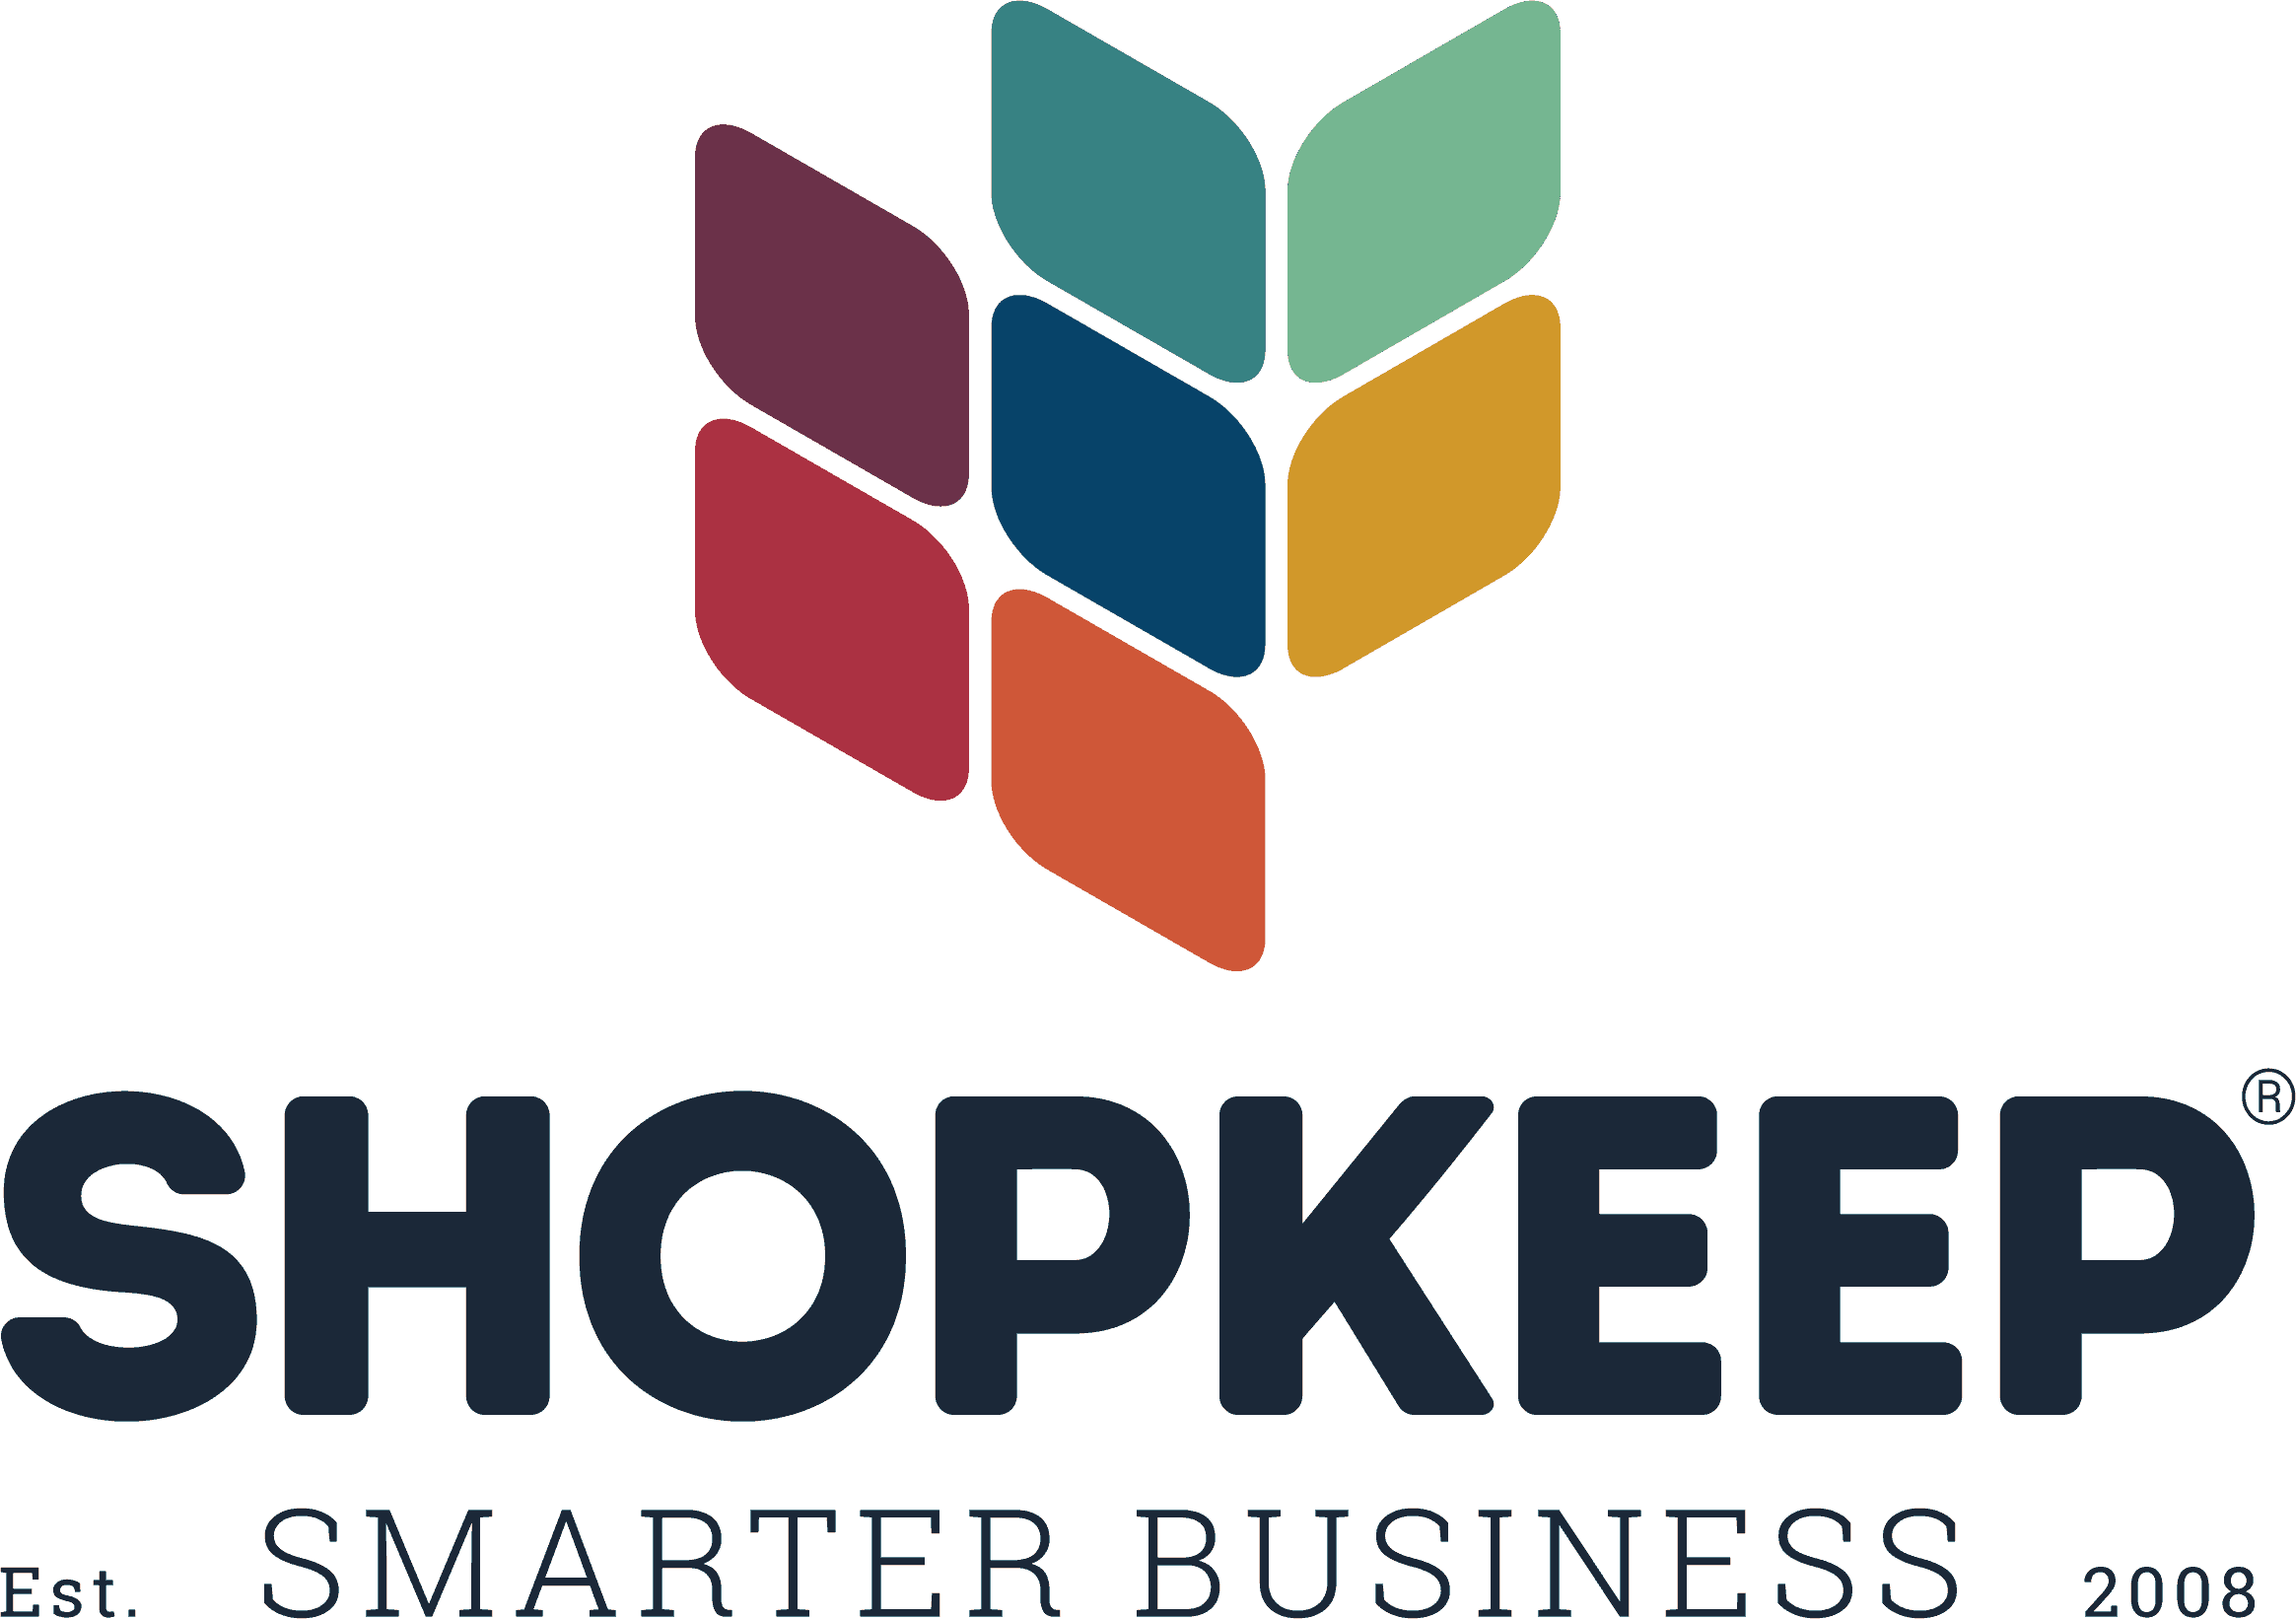 shopkeep-logo